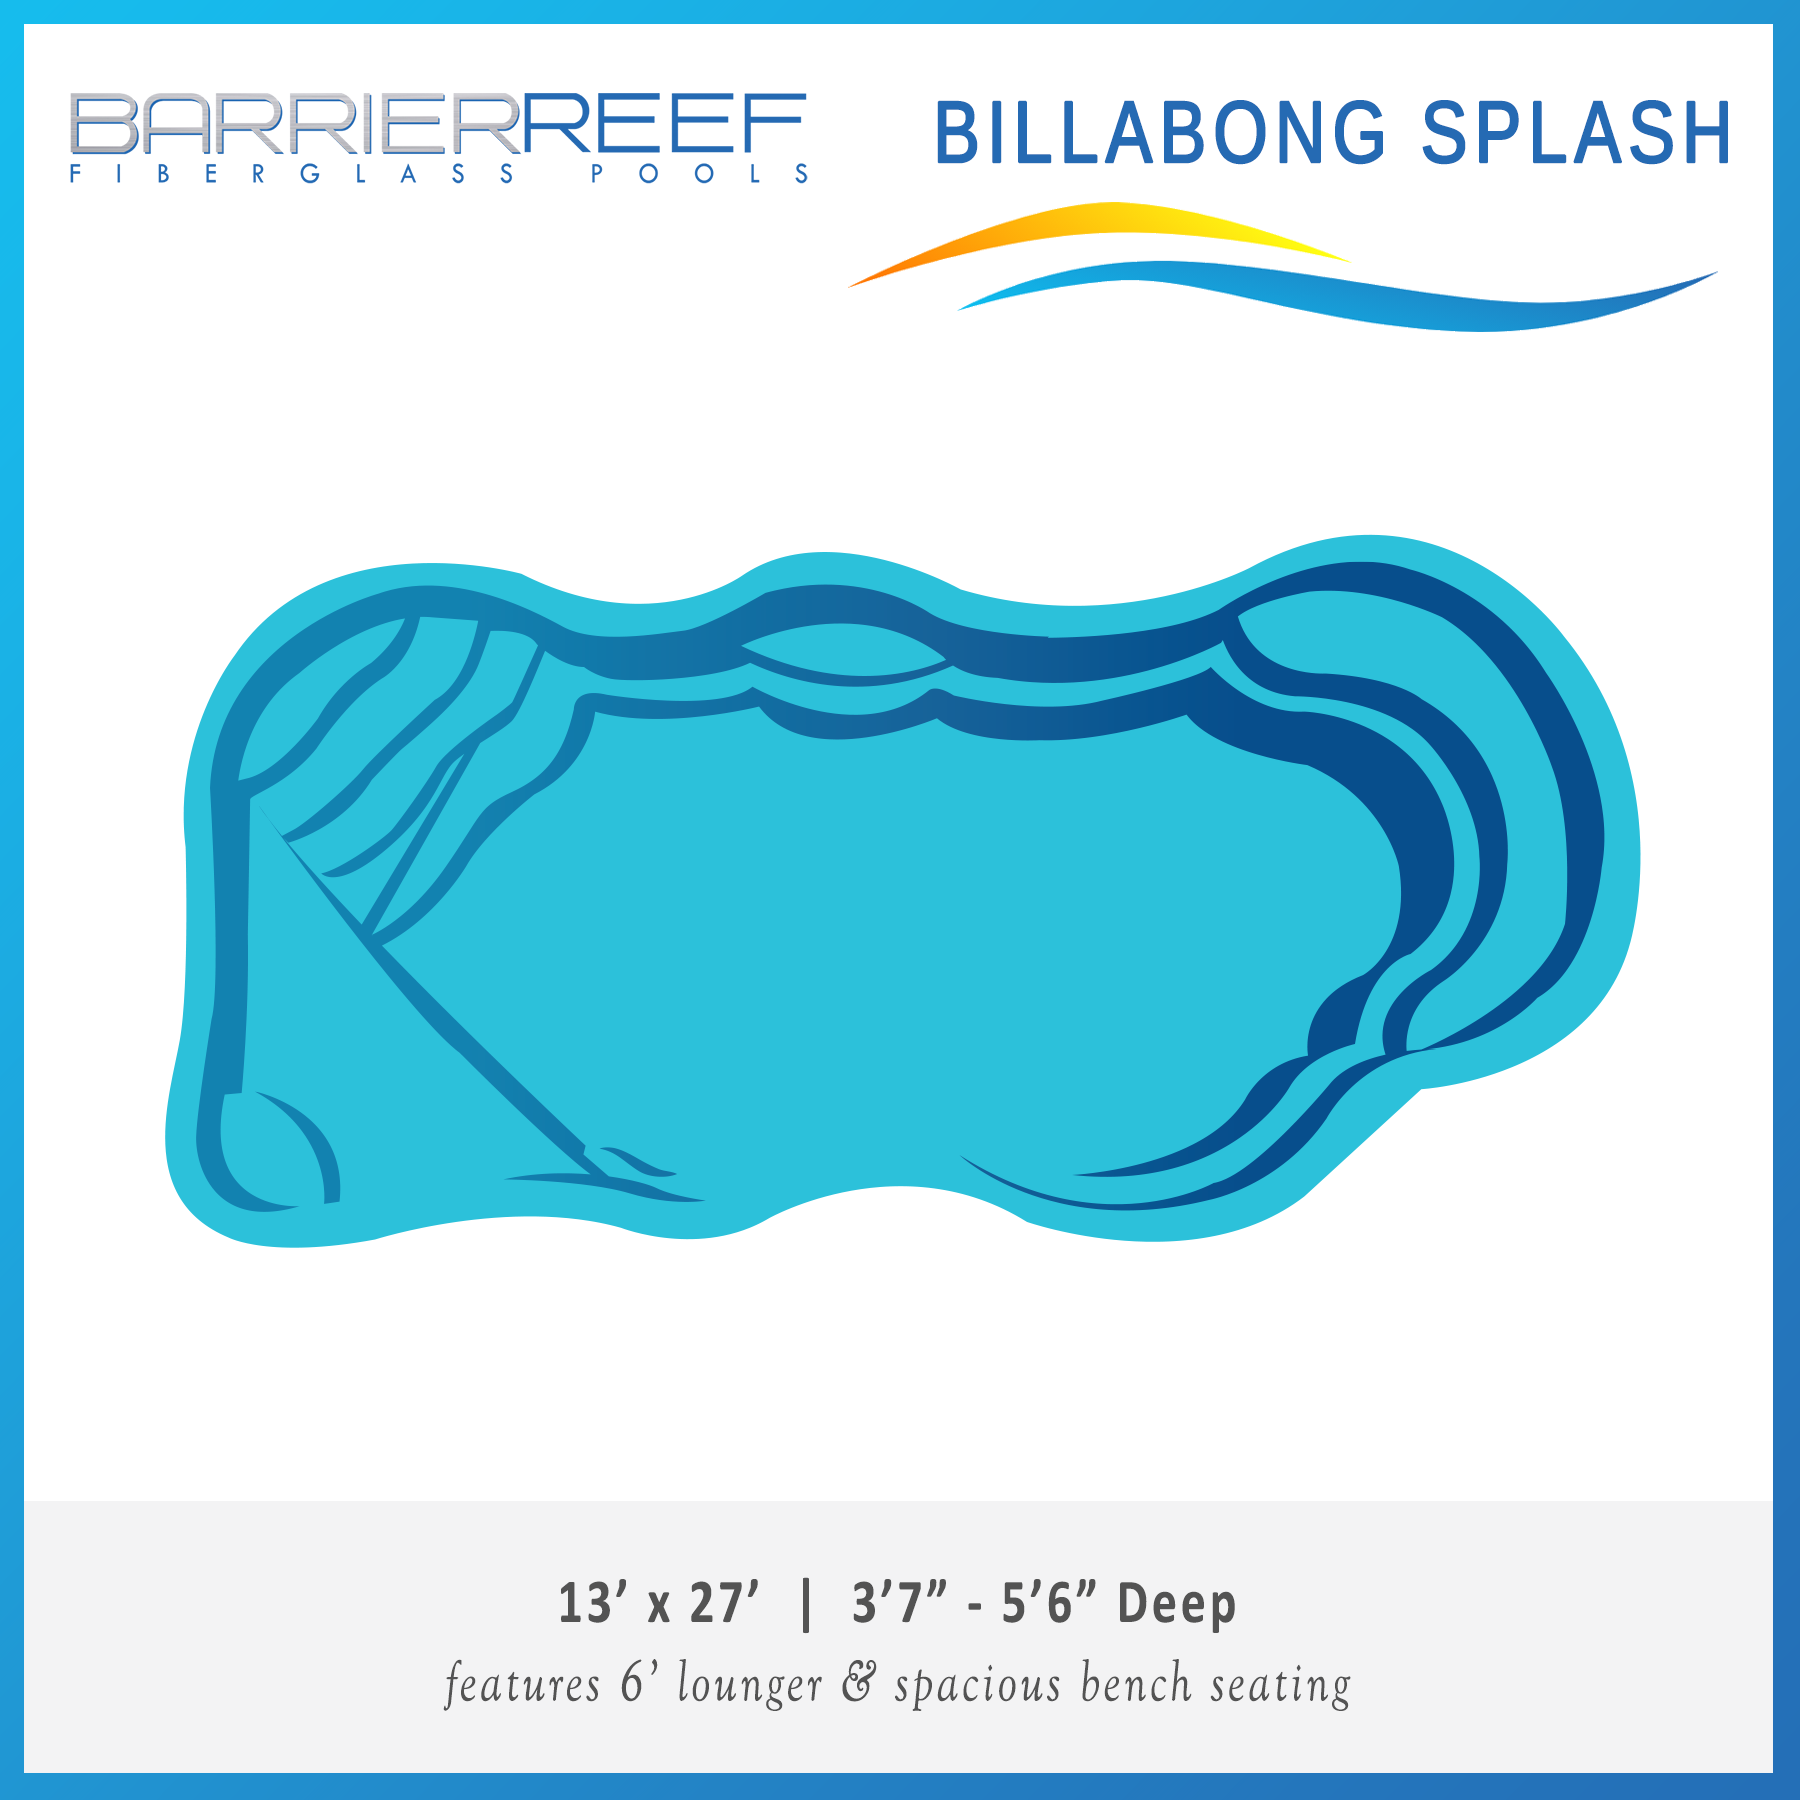 Billabong Splash Barrier Reef Fiberglass Pool